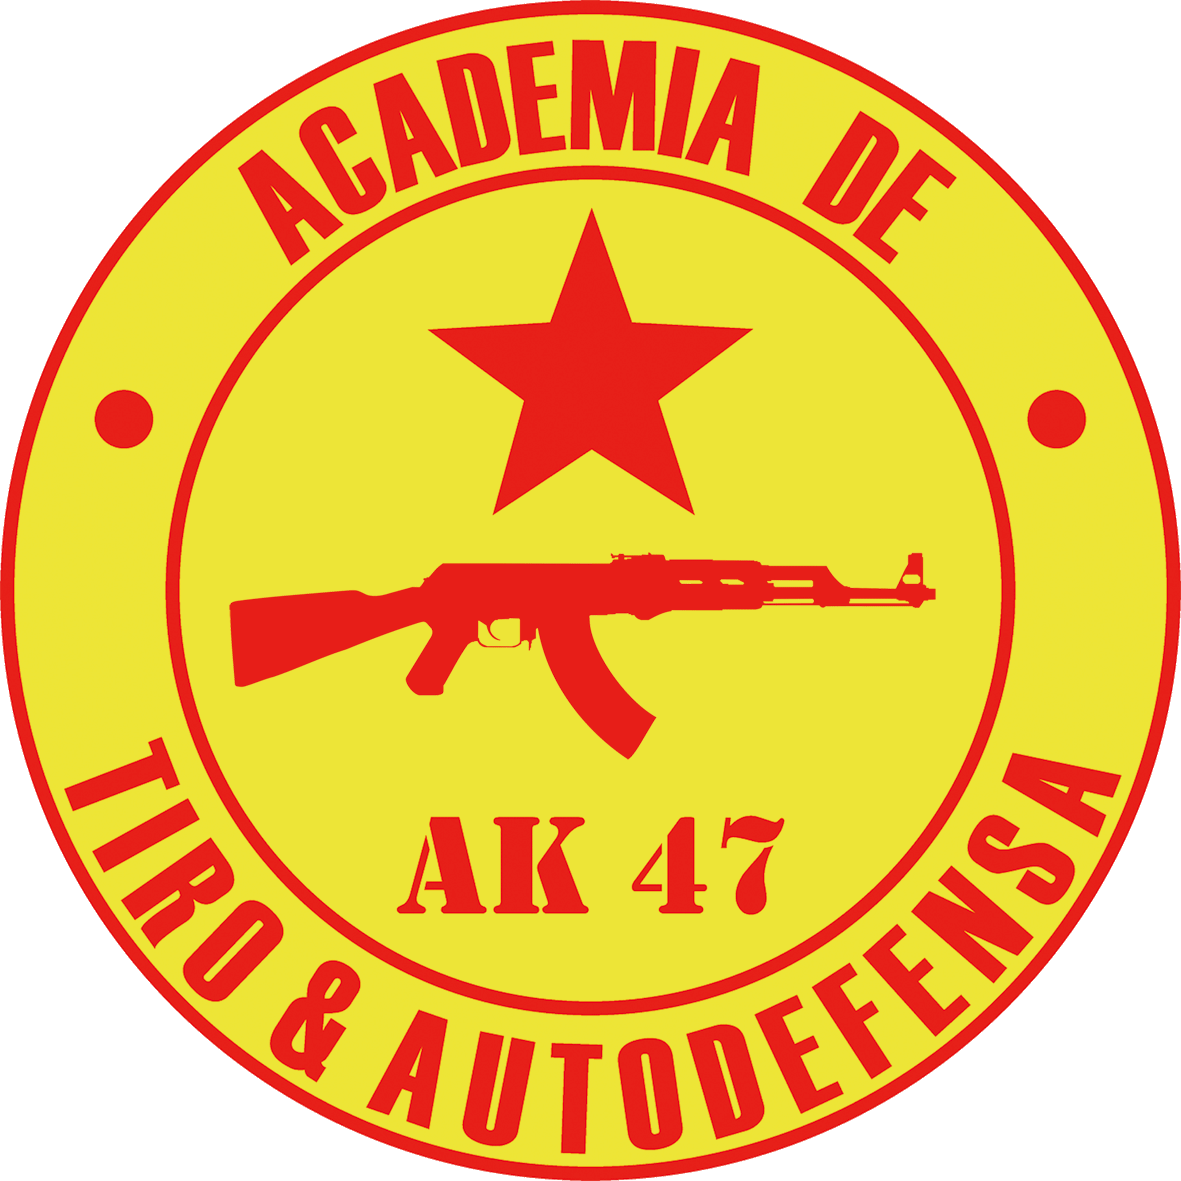 Academia de Tiro y Autodefensa "AK 47"